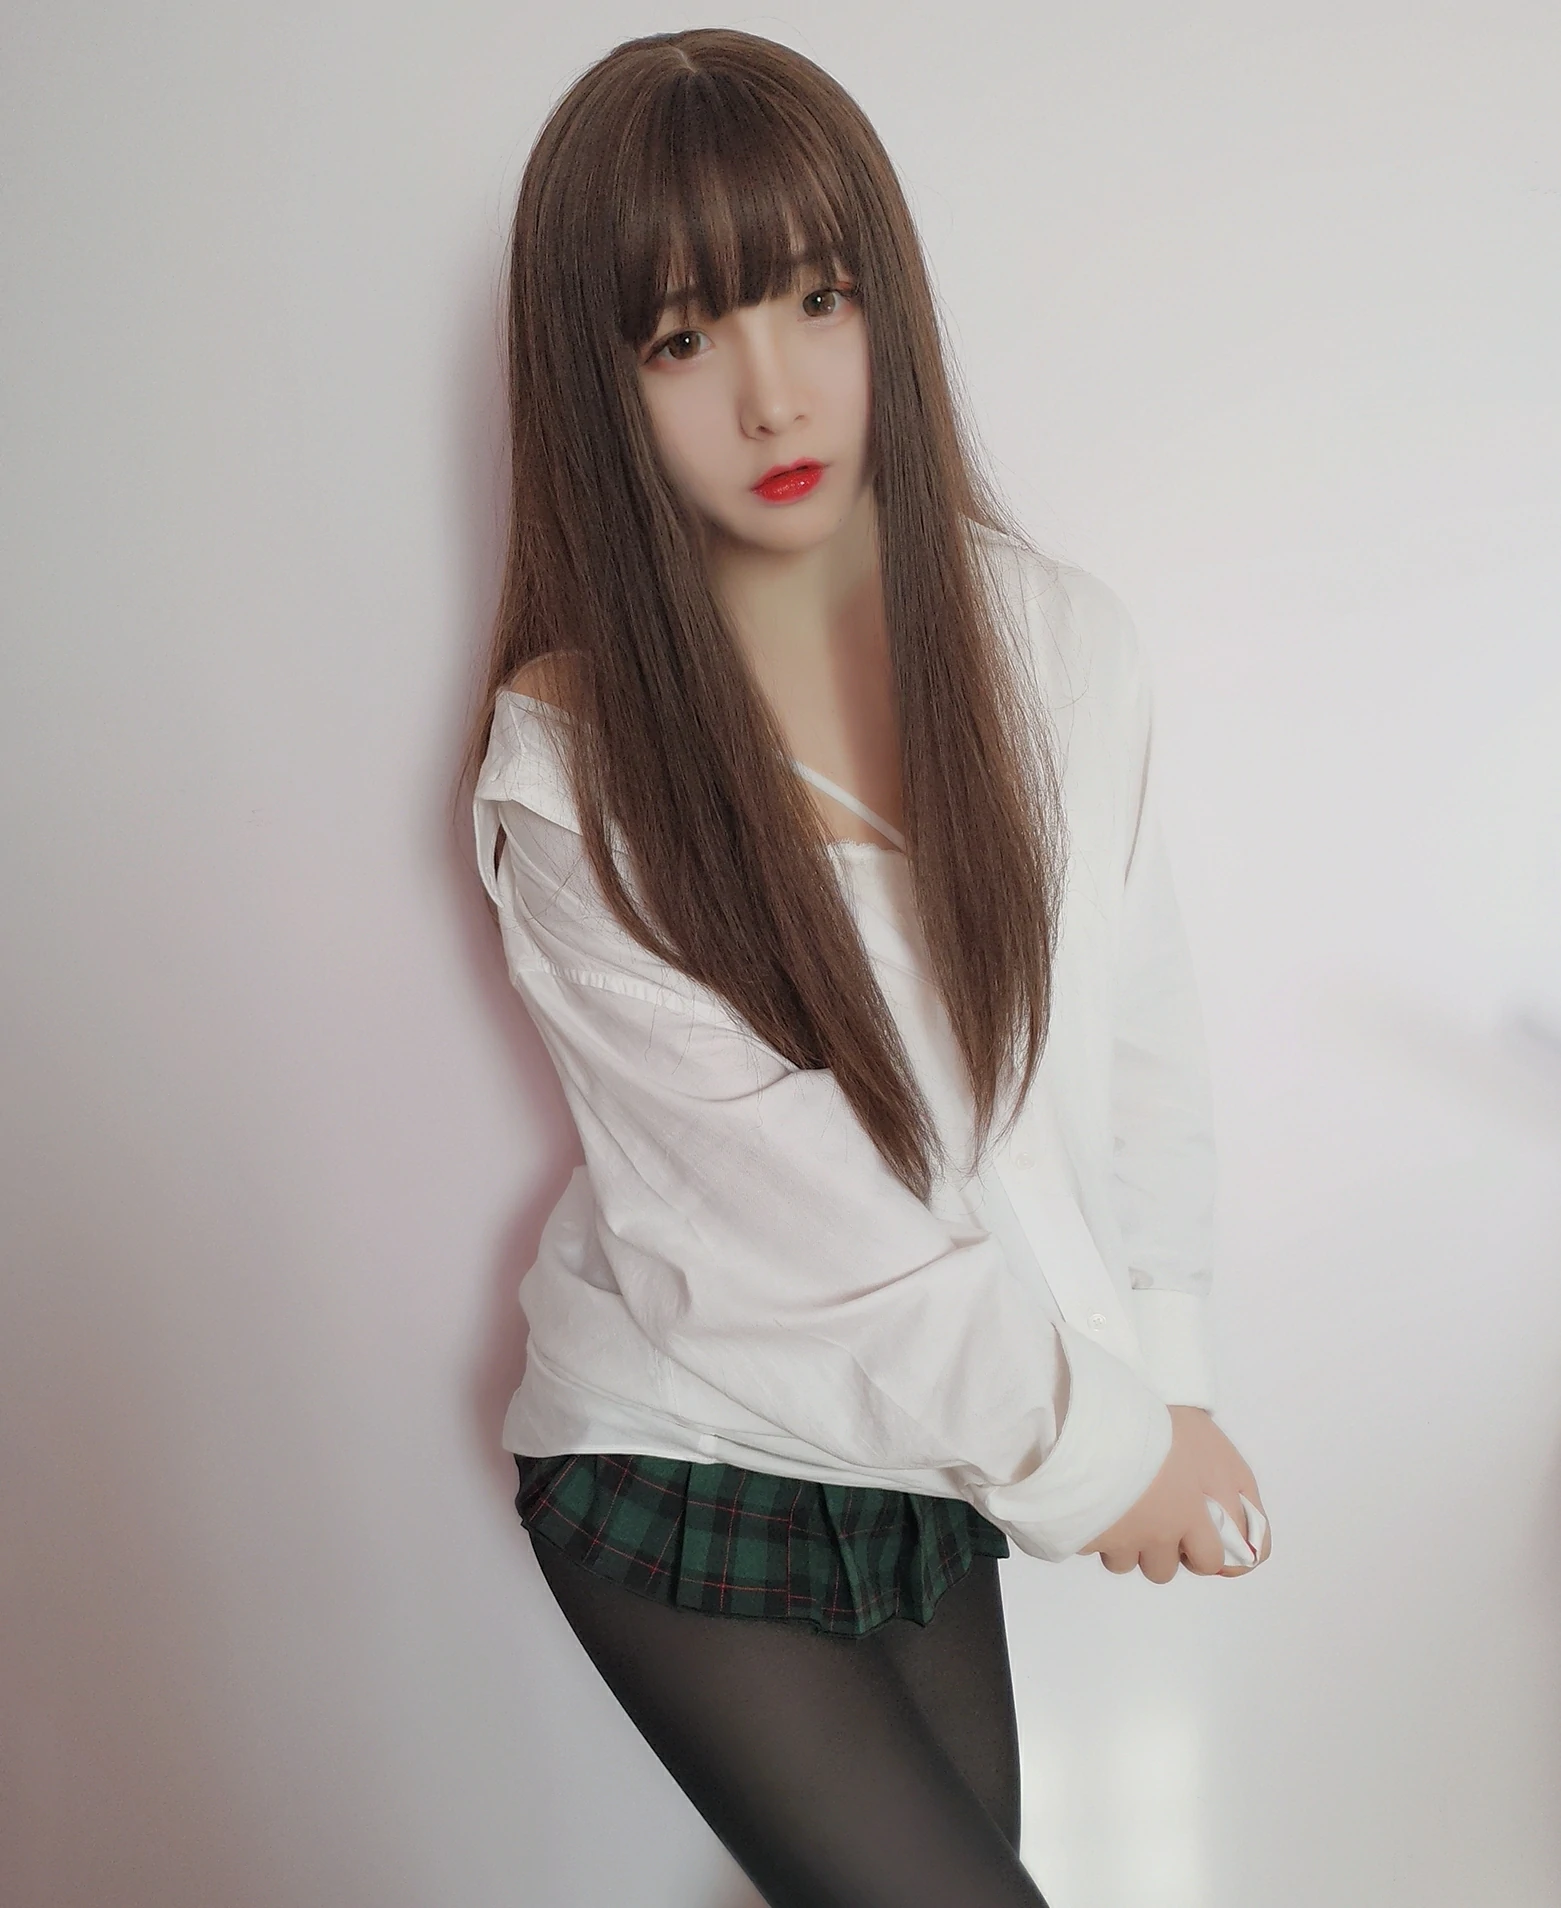 清纯少女 古川kagura 绿色格子短裙加黑丝美腿私房写真,